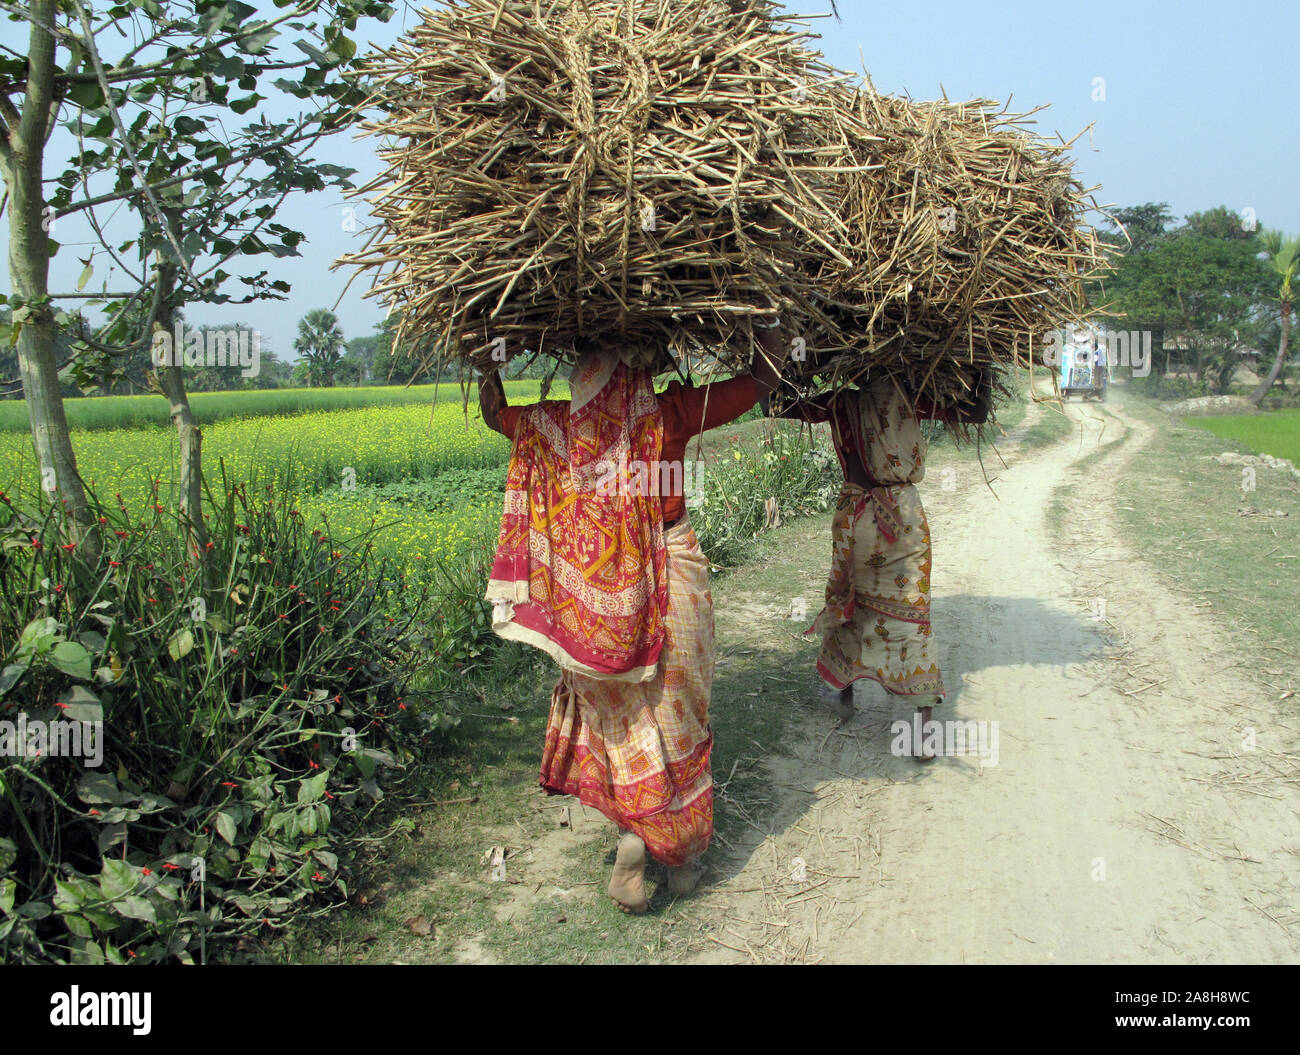 Rice planting,Kamar para,Bardhman dist. West Bengal,India Stock